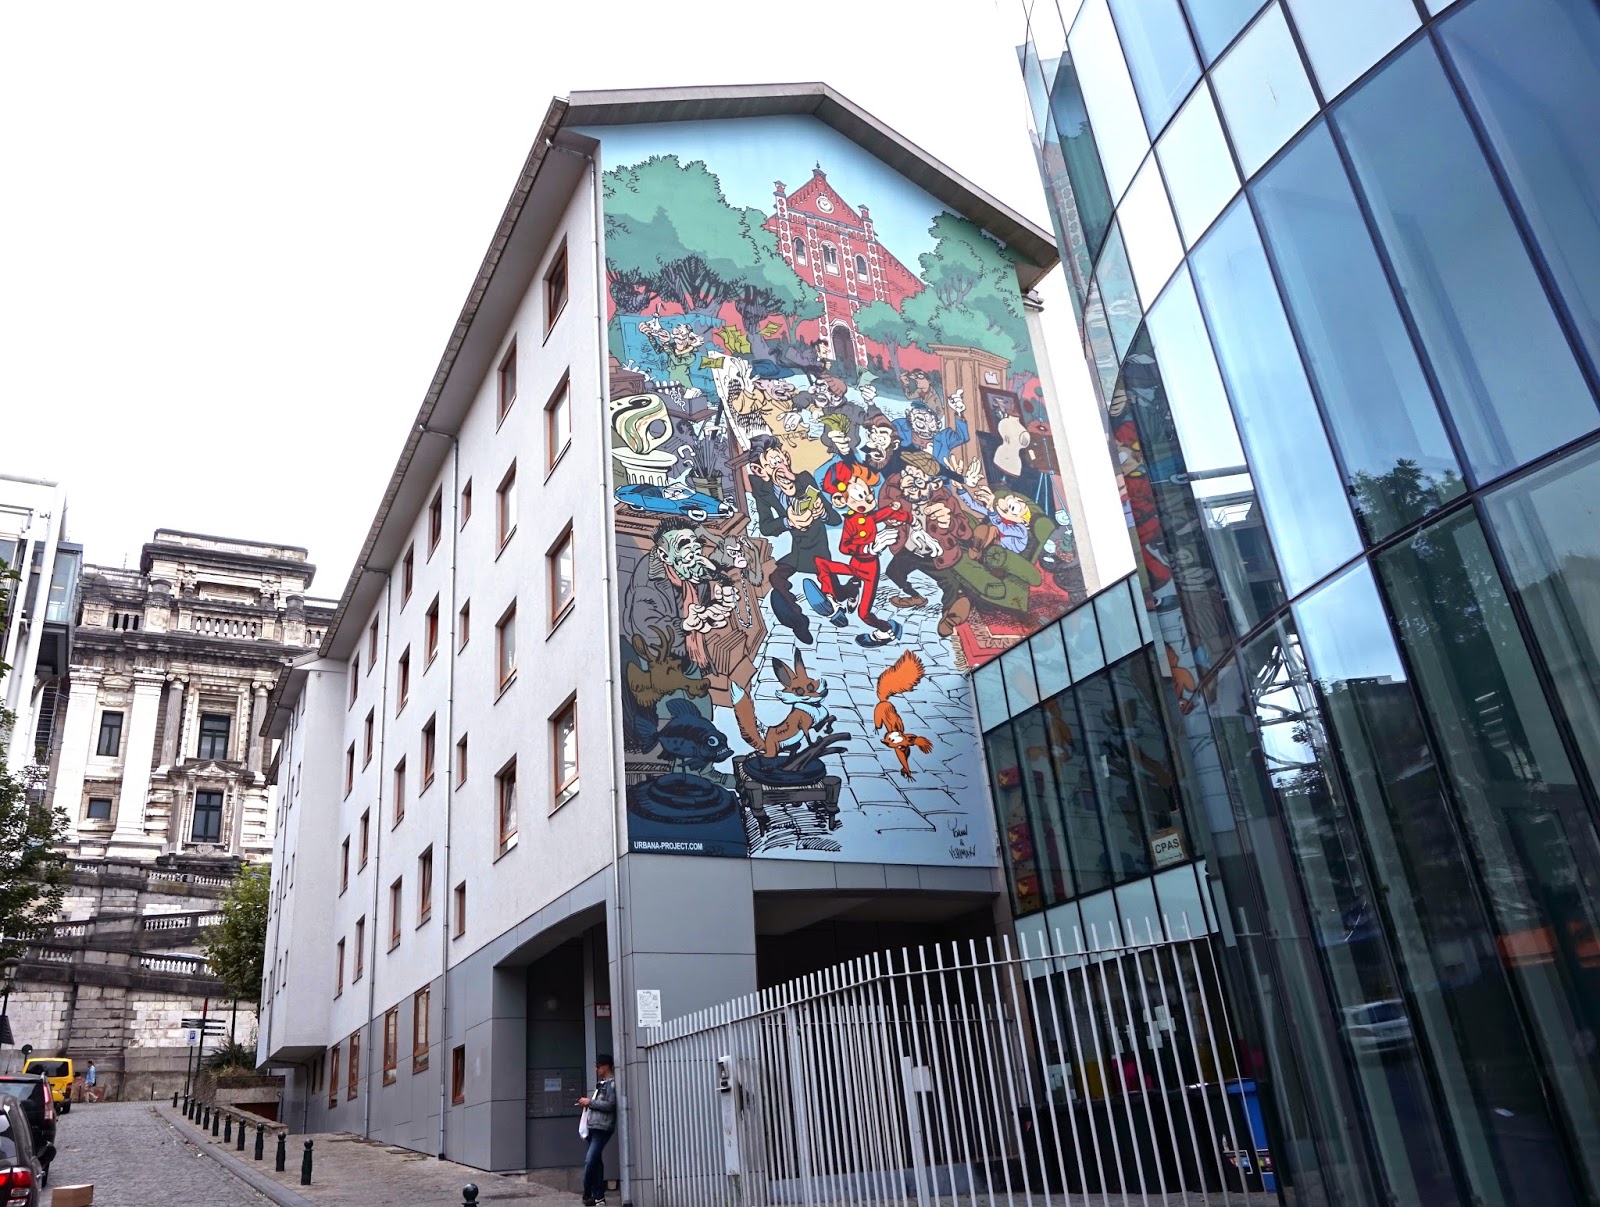 På skattejagt efter tegneserie-malerier i Bruxelles